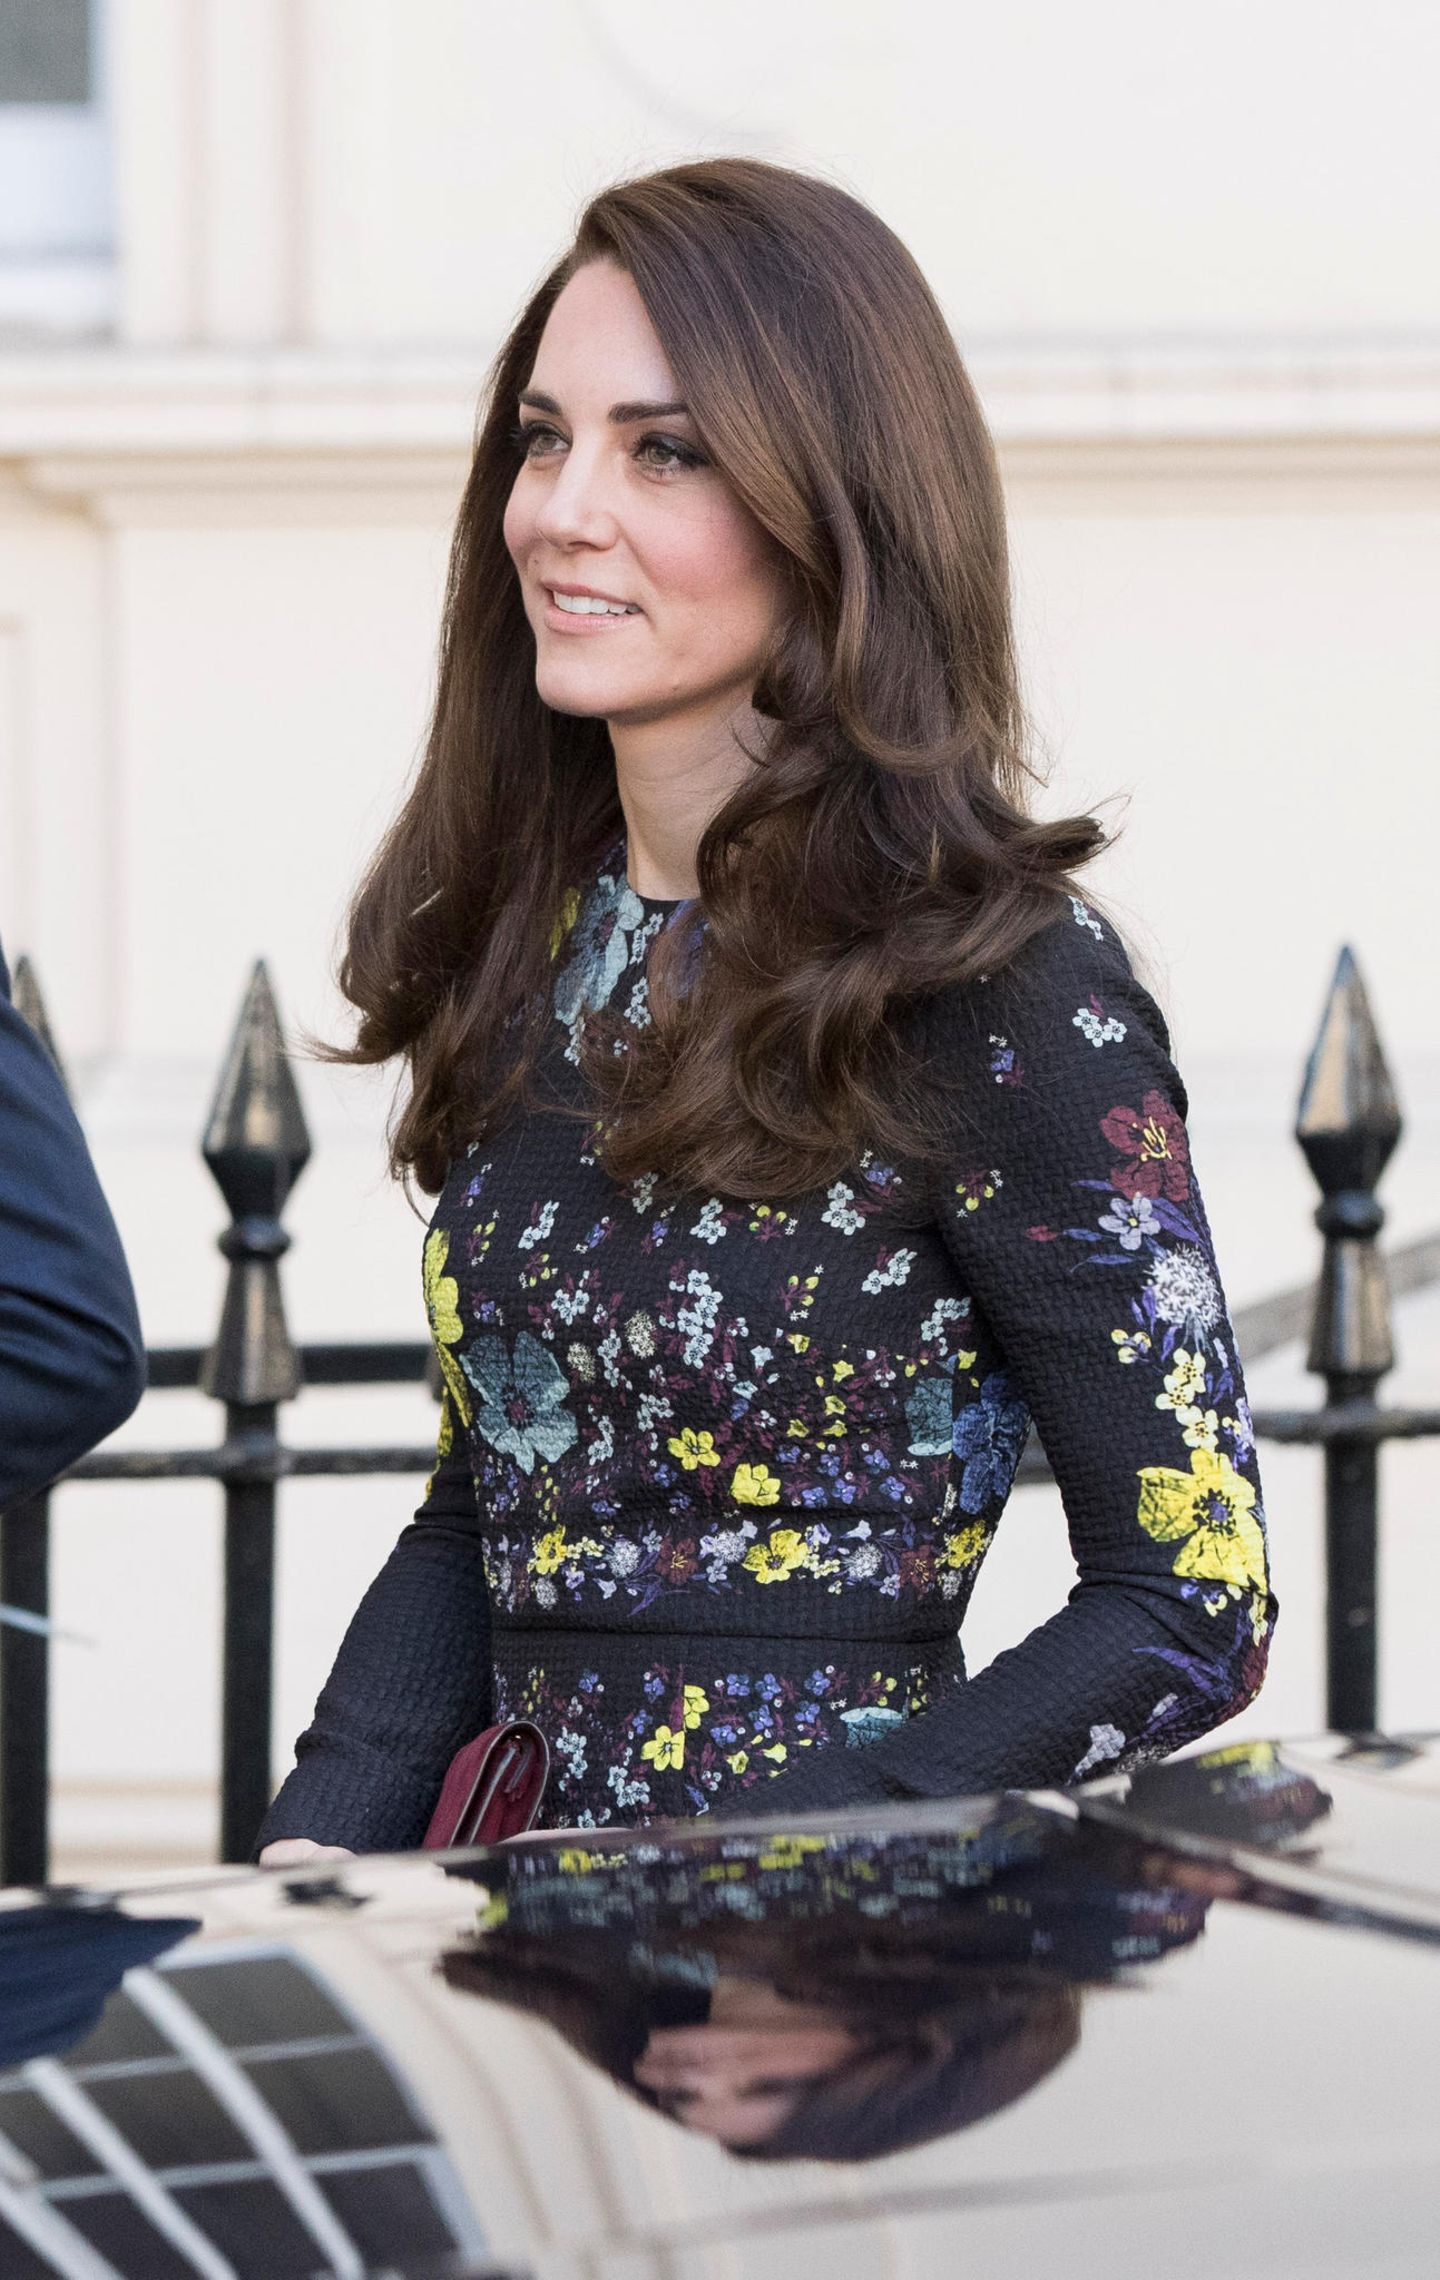 Haarfarben der Royals: Kate Middleton vor einem Auto